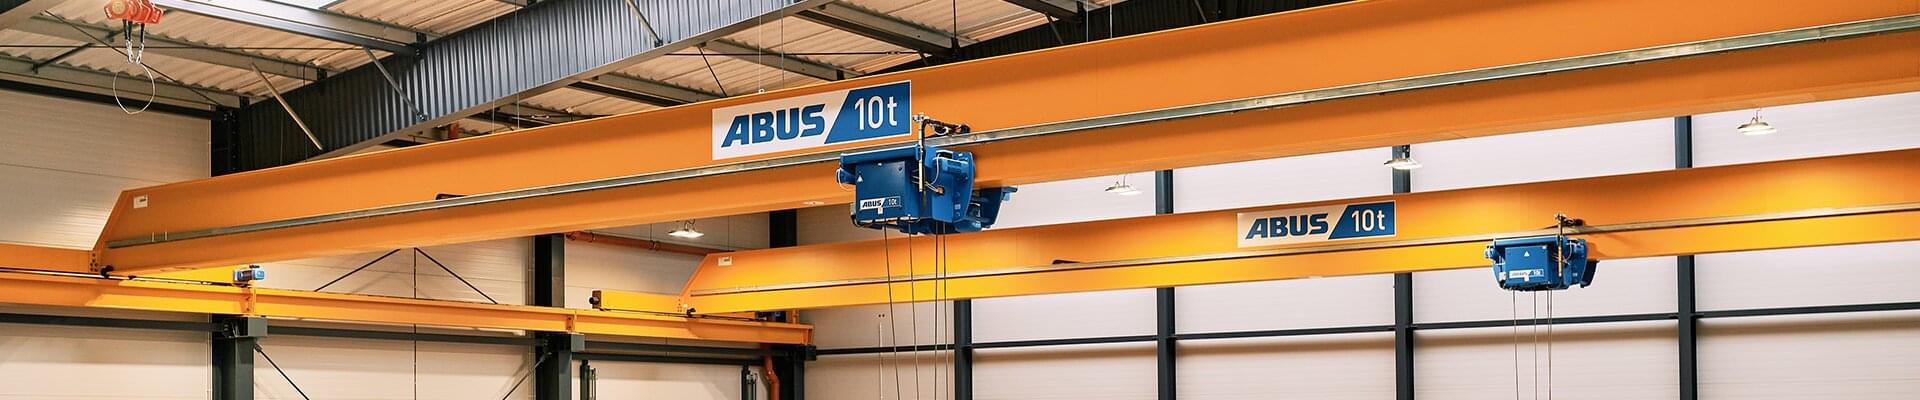 ABUS Einträger-Laufkrane mit einer Tragfähigkeit von 10t bei der Firma Ruland Engineering & Consulting Sp. z o.o. in Polen